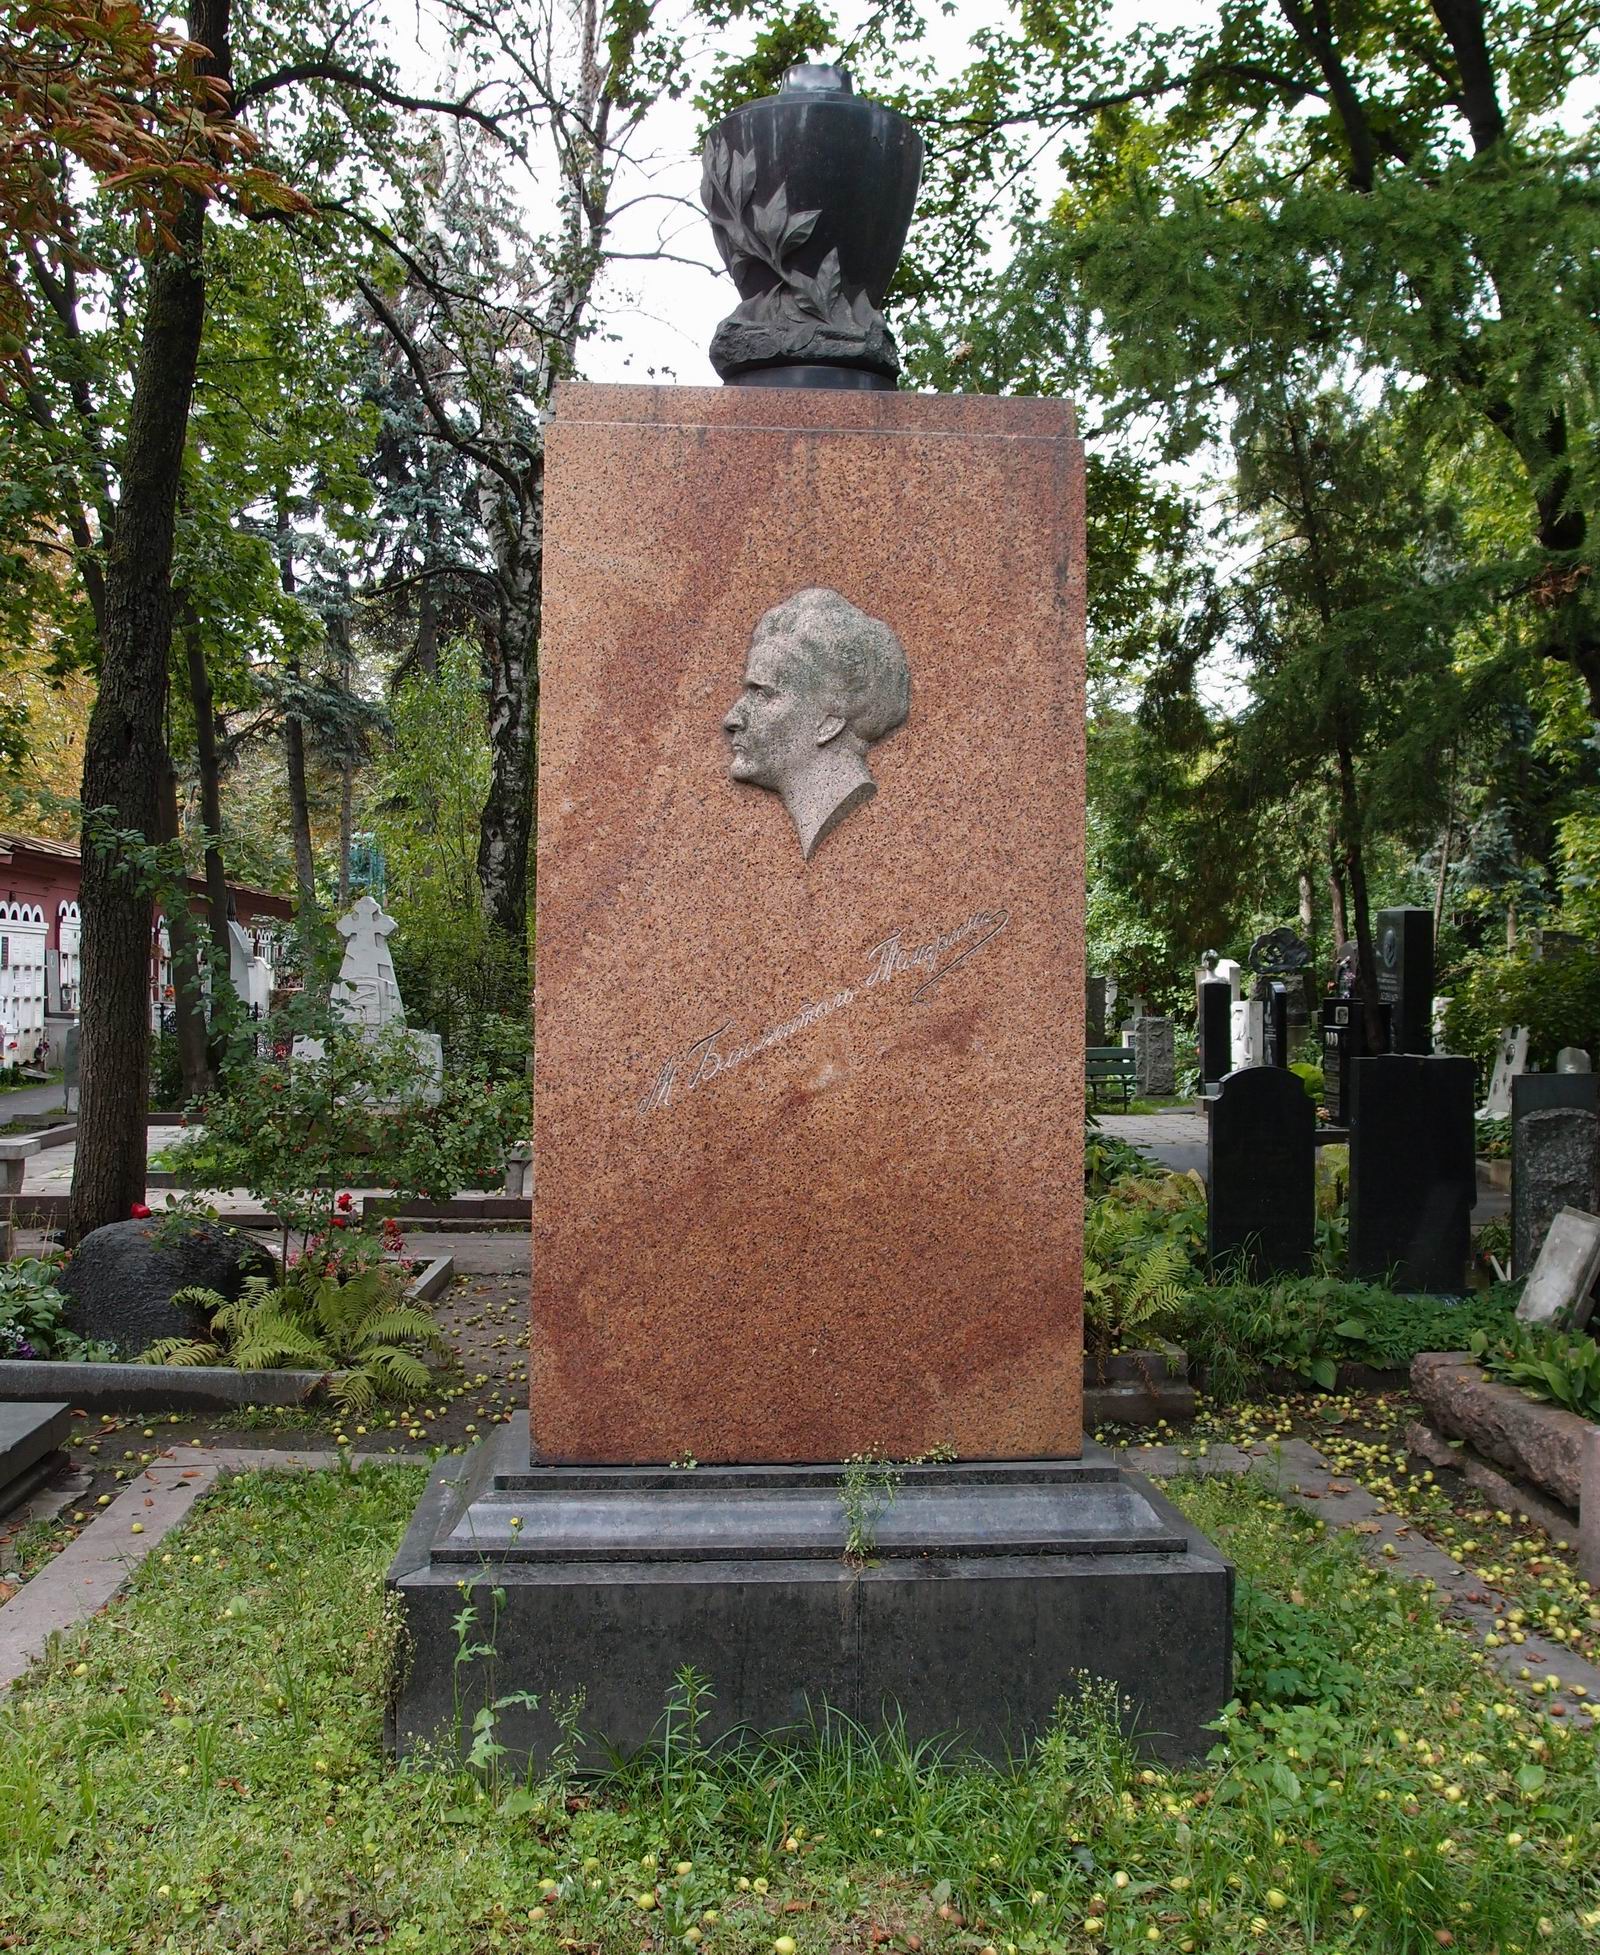 Памятник на могиле Блюменталь-Тамариной М.М. (1859–1938), ск. С.Меркуров, на Новодевичьем кладбище (2–22–9). Нажмите левую кнопку мыши, чтобы увидеть фрагмент памятника крупно.